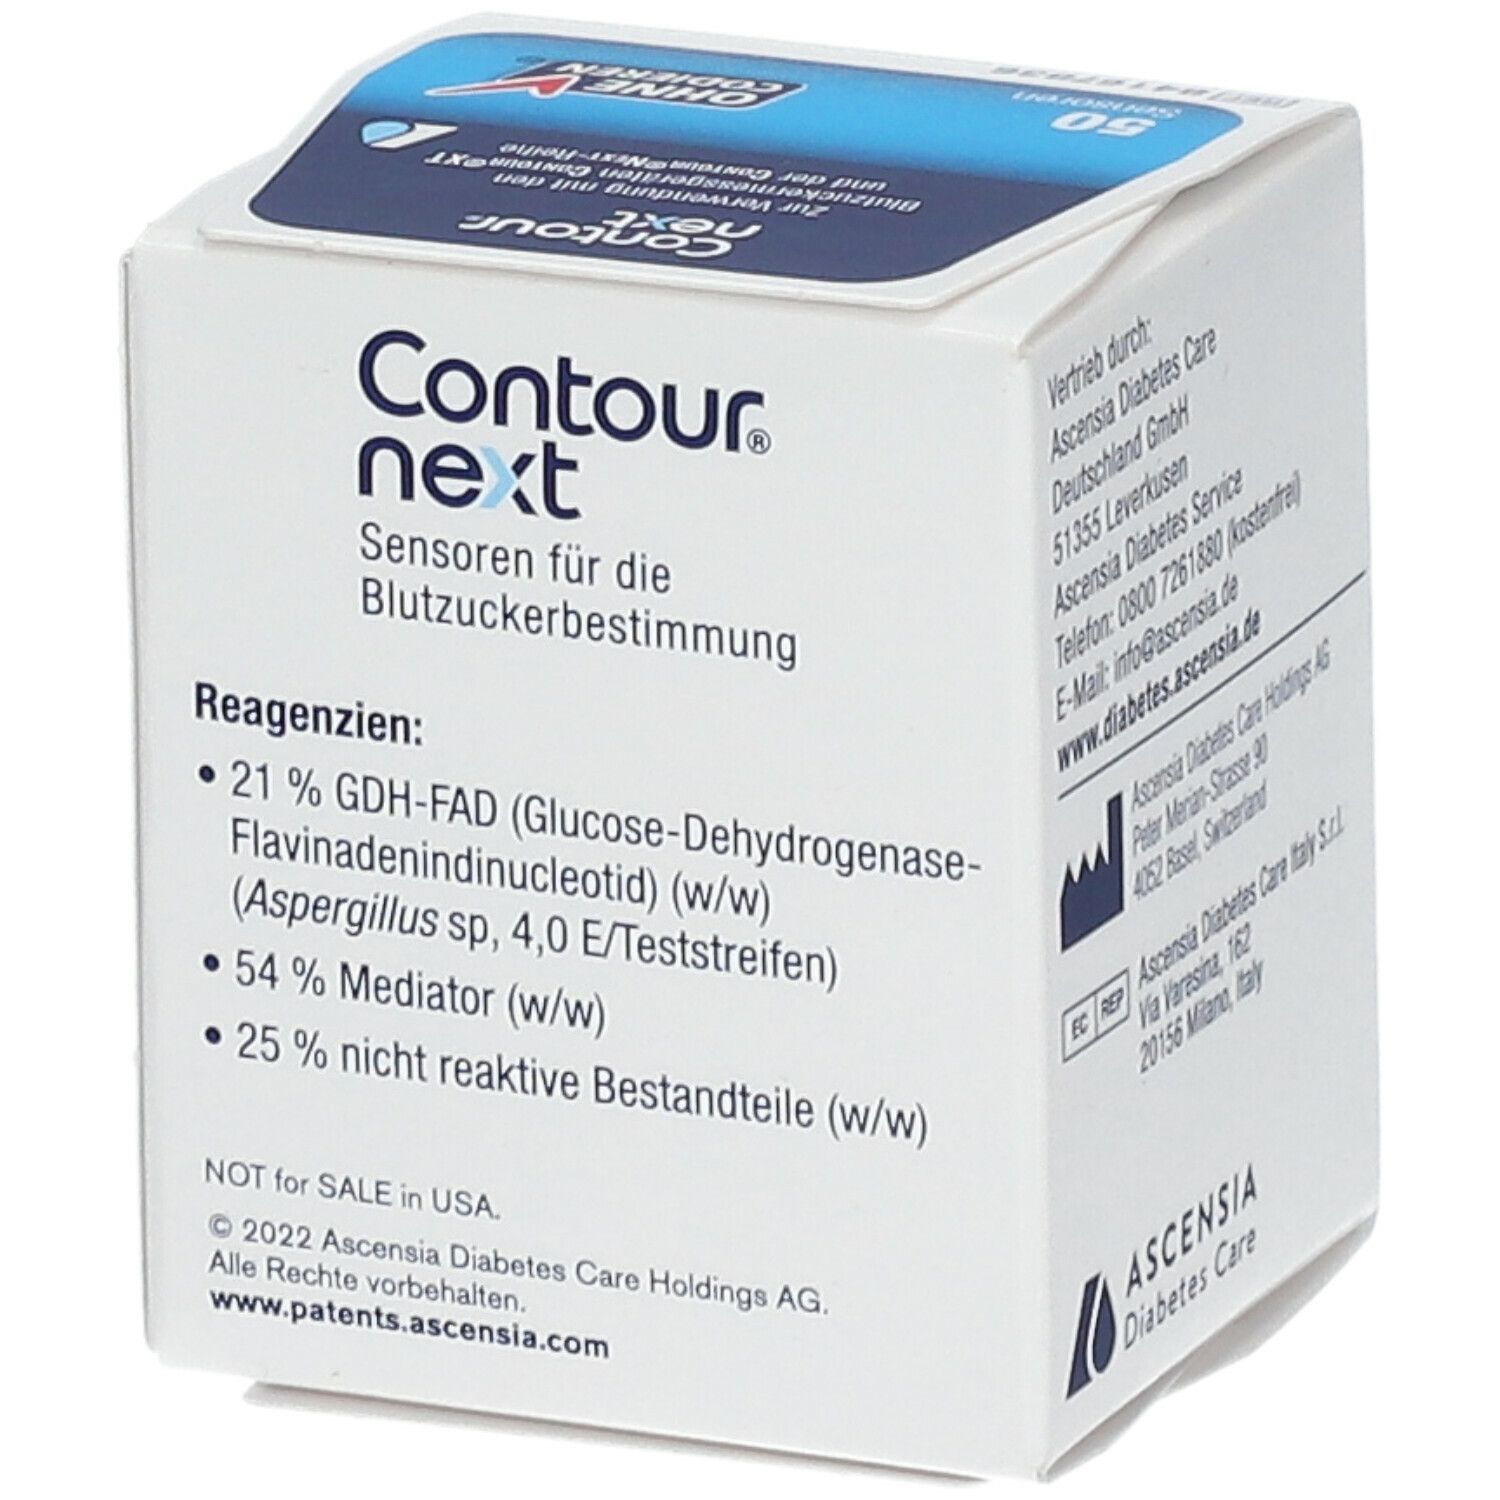 Contour Next Sensoren, 50 pcs. Test strips — apohealth - Gesundheit aus der  Apotheke